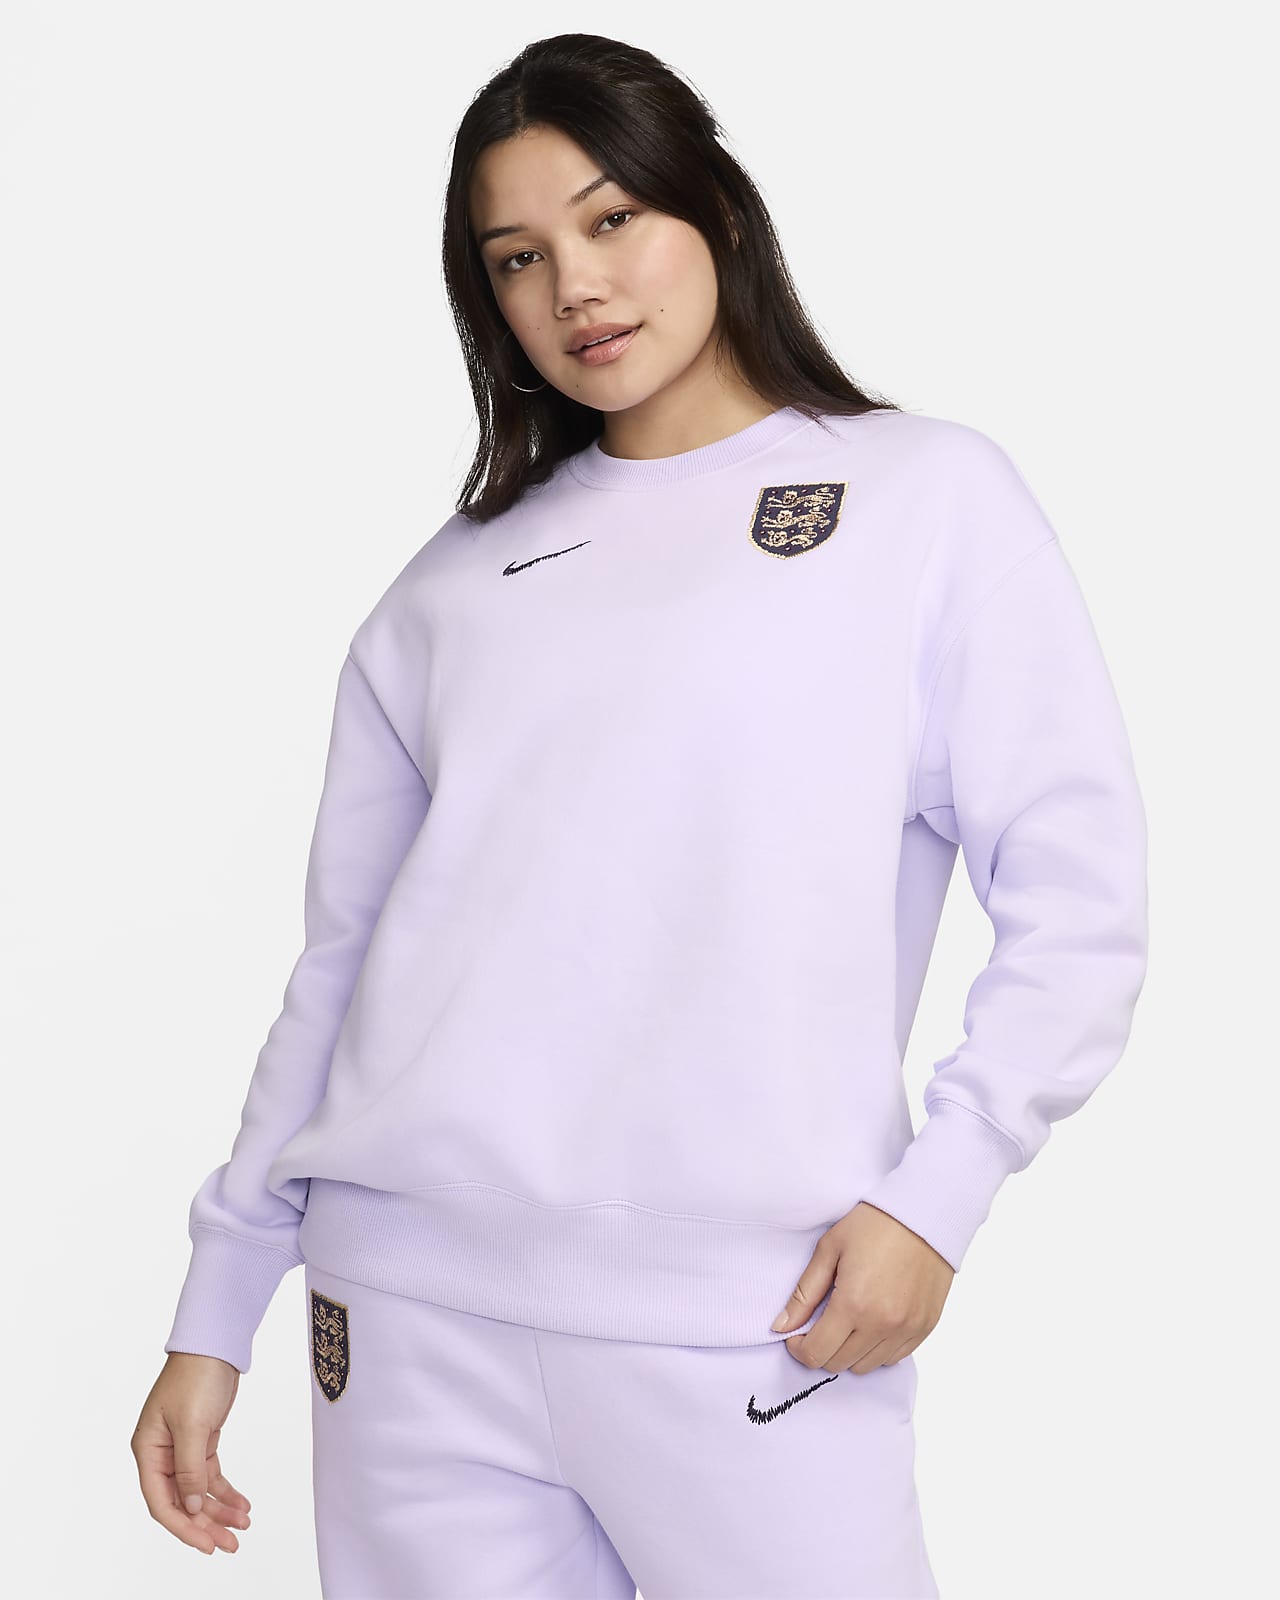 İngiltere Phoenix Fleece Nike Bol Kesimli Crew Yakalı Kadın Futbol Sweatshirt'ü